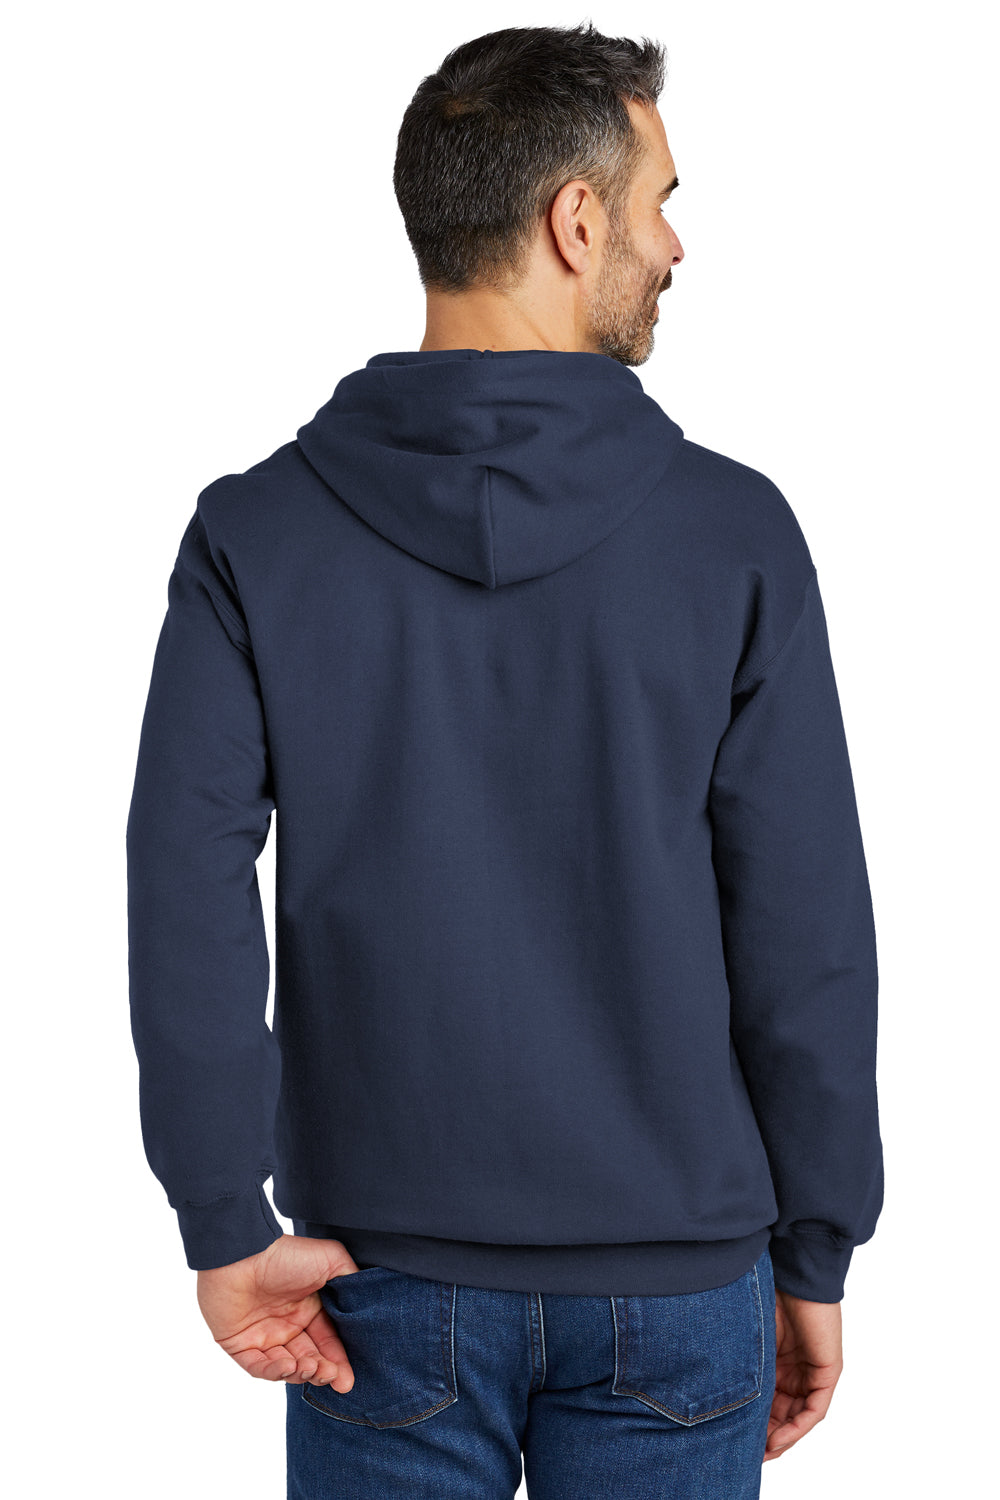 Gildan SF500 Softstyle Hooded Sweatshirt Hoodie Navy Blue Back